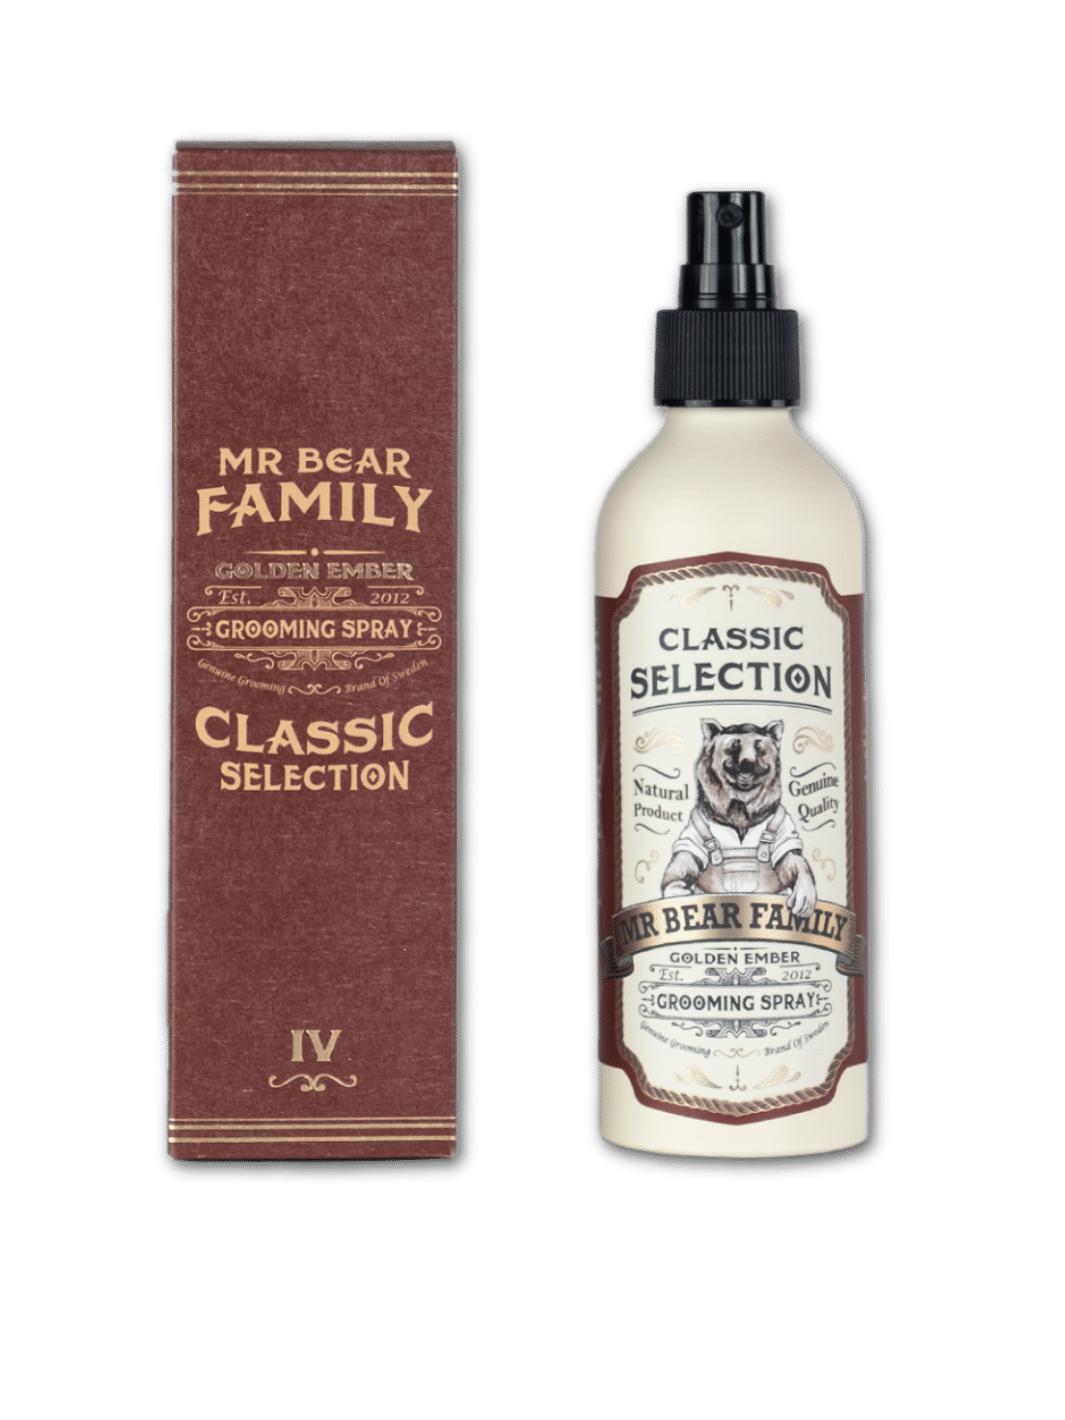 Mr. Bear Family Grooming Spray Golden Ember, 200ml Flasche, vielseitiges Styling- und Pflegespray für Haar und Bart, in einer durchsichtigen Sprühflasche mit goldenen Details, erhältlich bei Phullcutz.